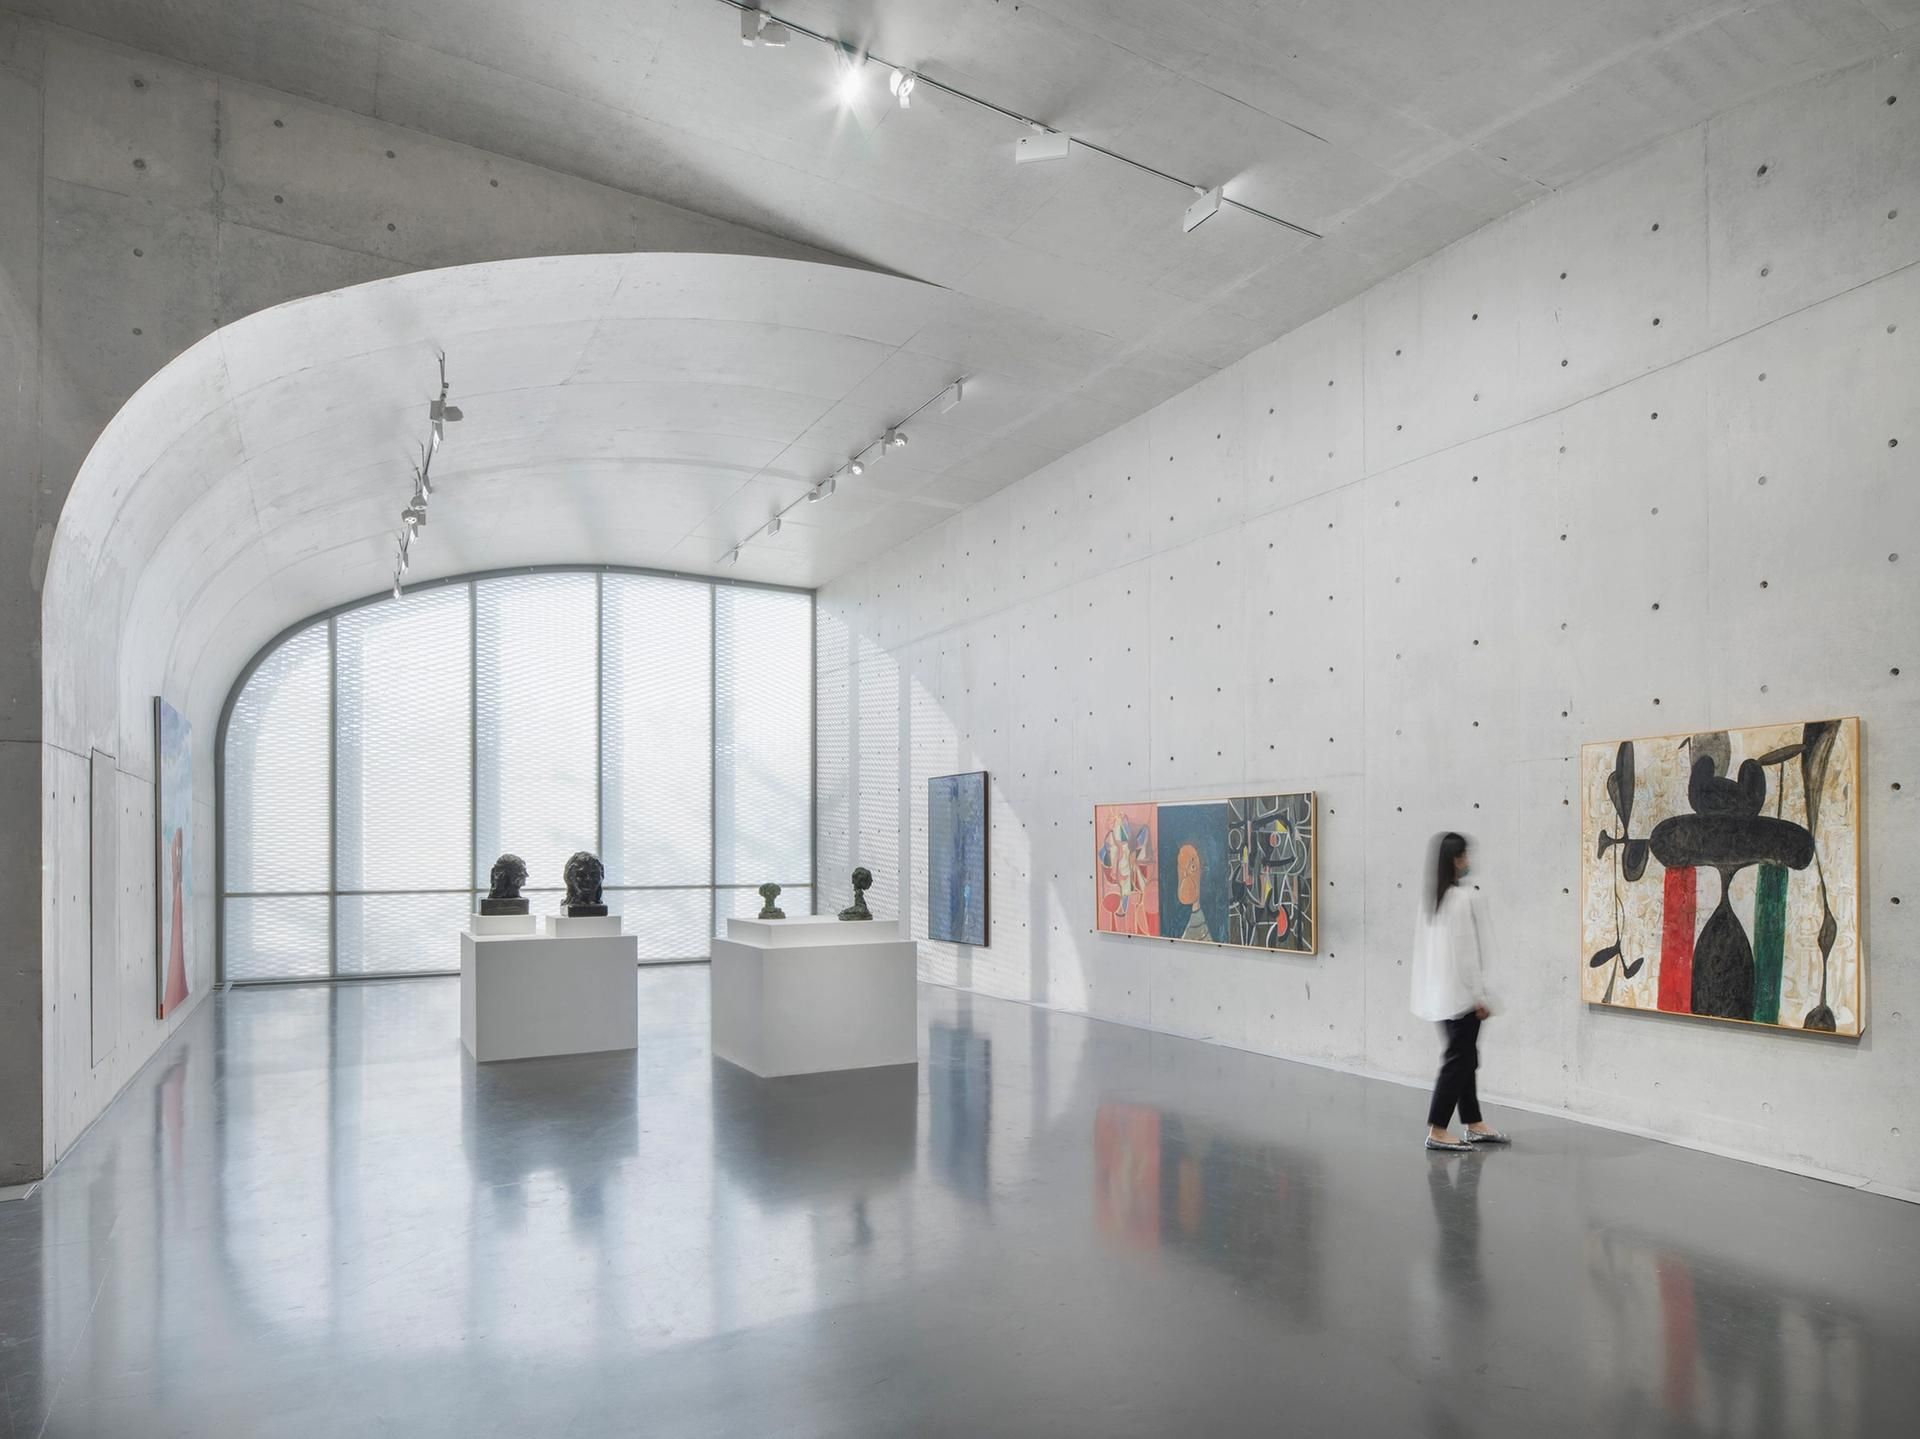 תצוגה  של ג'ורג' קונדו: גלריית התמונות, במוזיאון לונג (בונד המערבי), שנחאי, 2021

© ג'ורג 'קונדו. באדיבות האמן והאוזר אנד וירט. צילום: JJYPHOTO